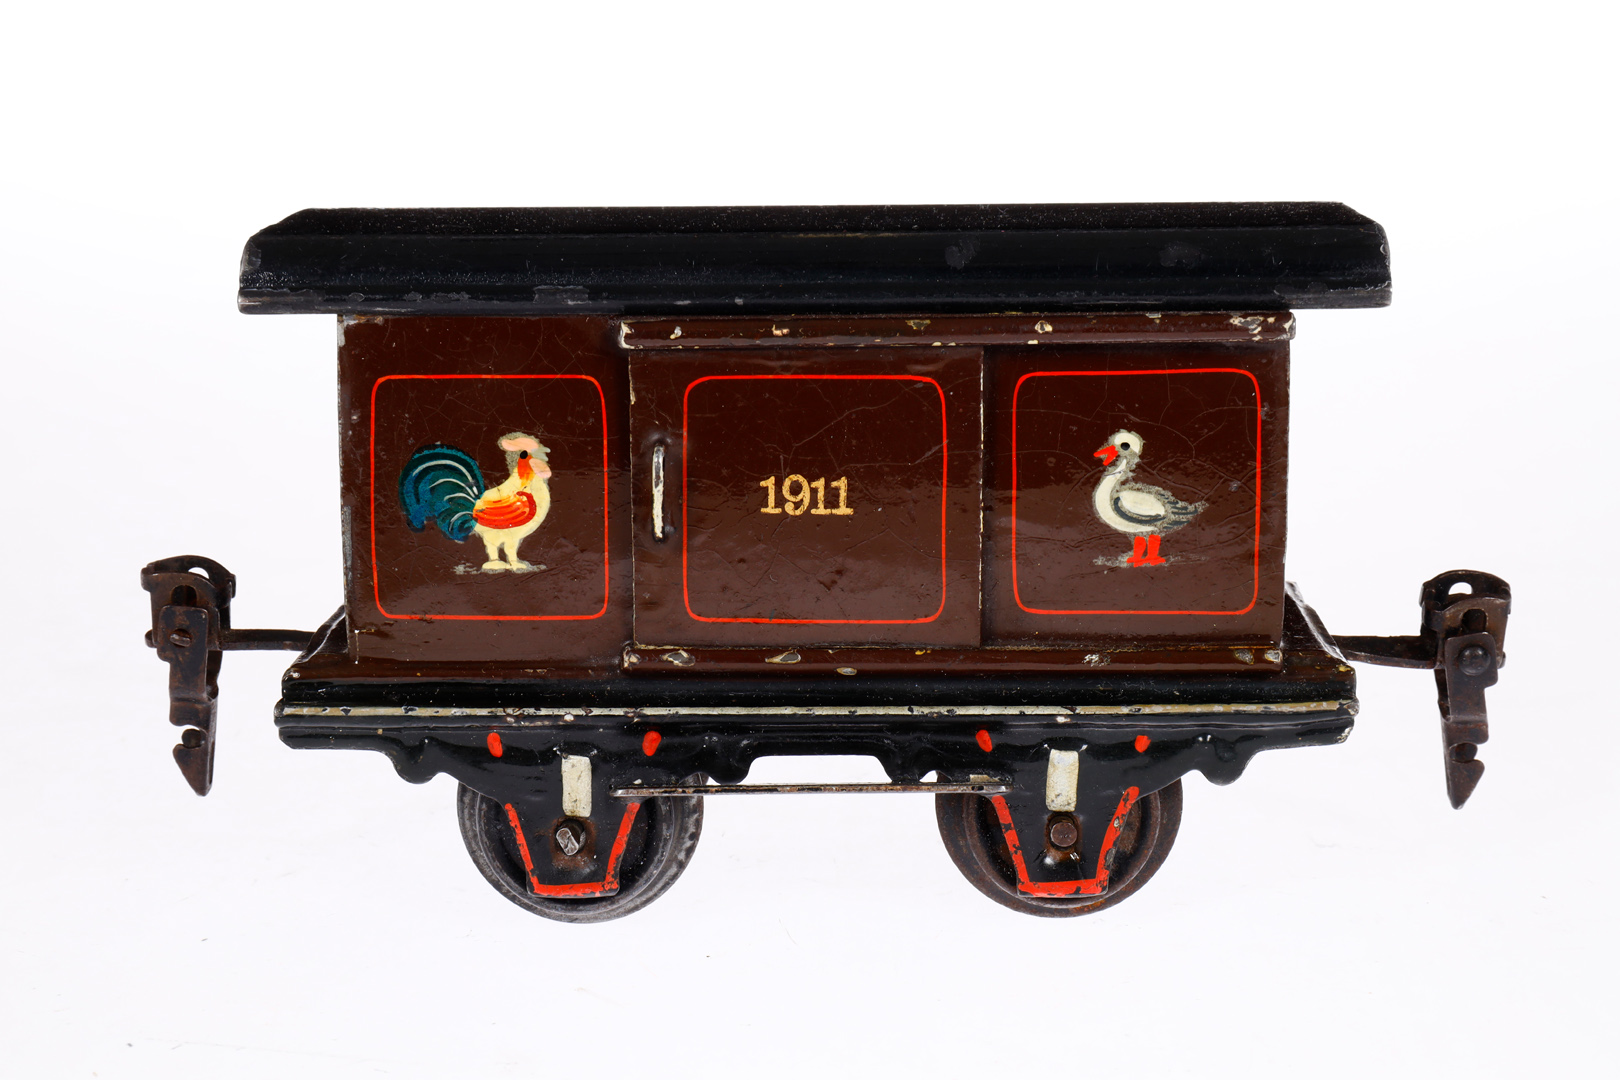 Märklin Kleintierwagen 1911, Spur 0, uralt, HL, mit 1 ST und 2 LT (Arretierungen fehlen), kleine - Bild 4 aus 6